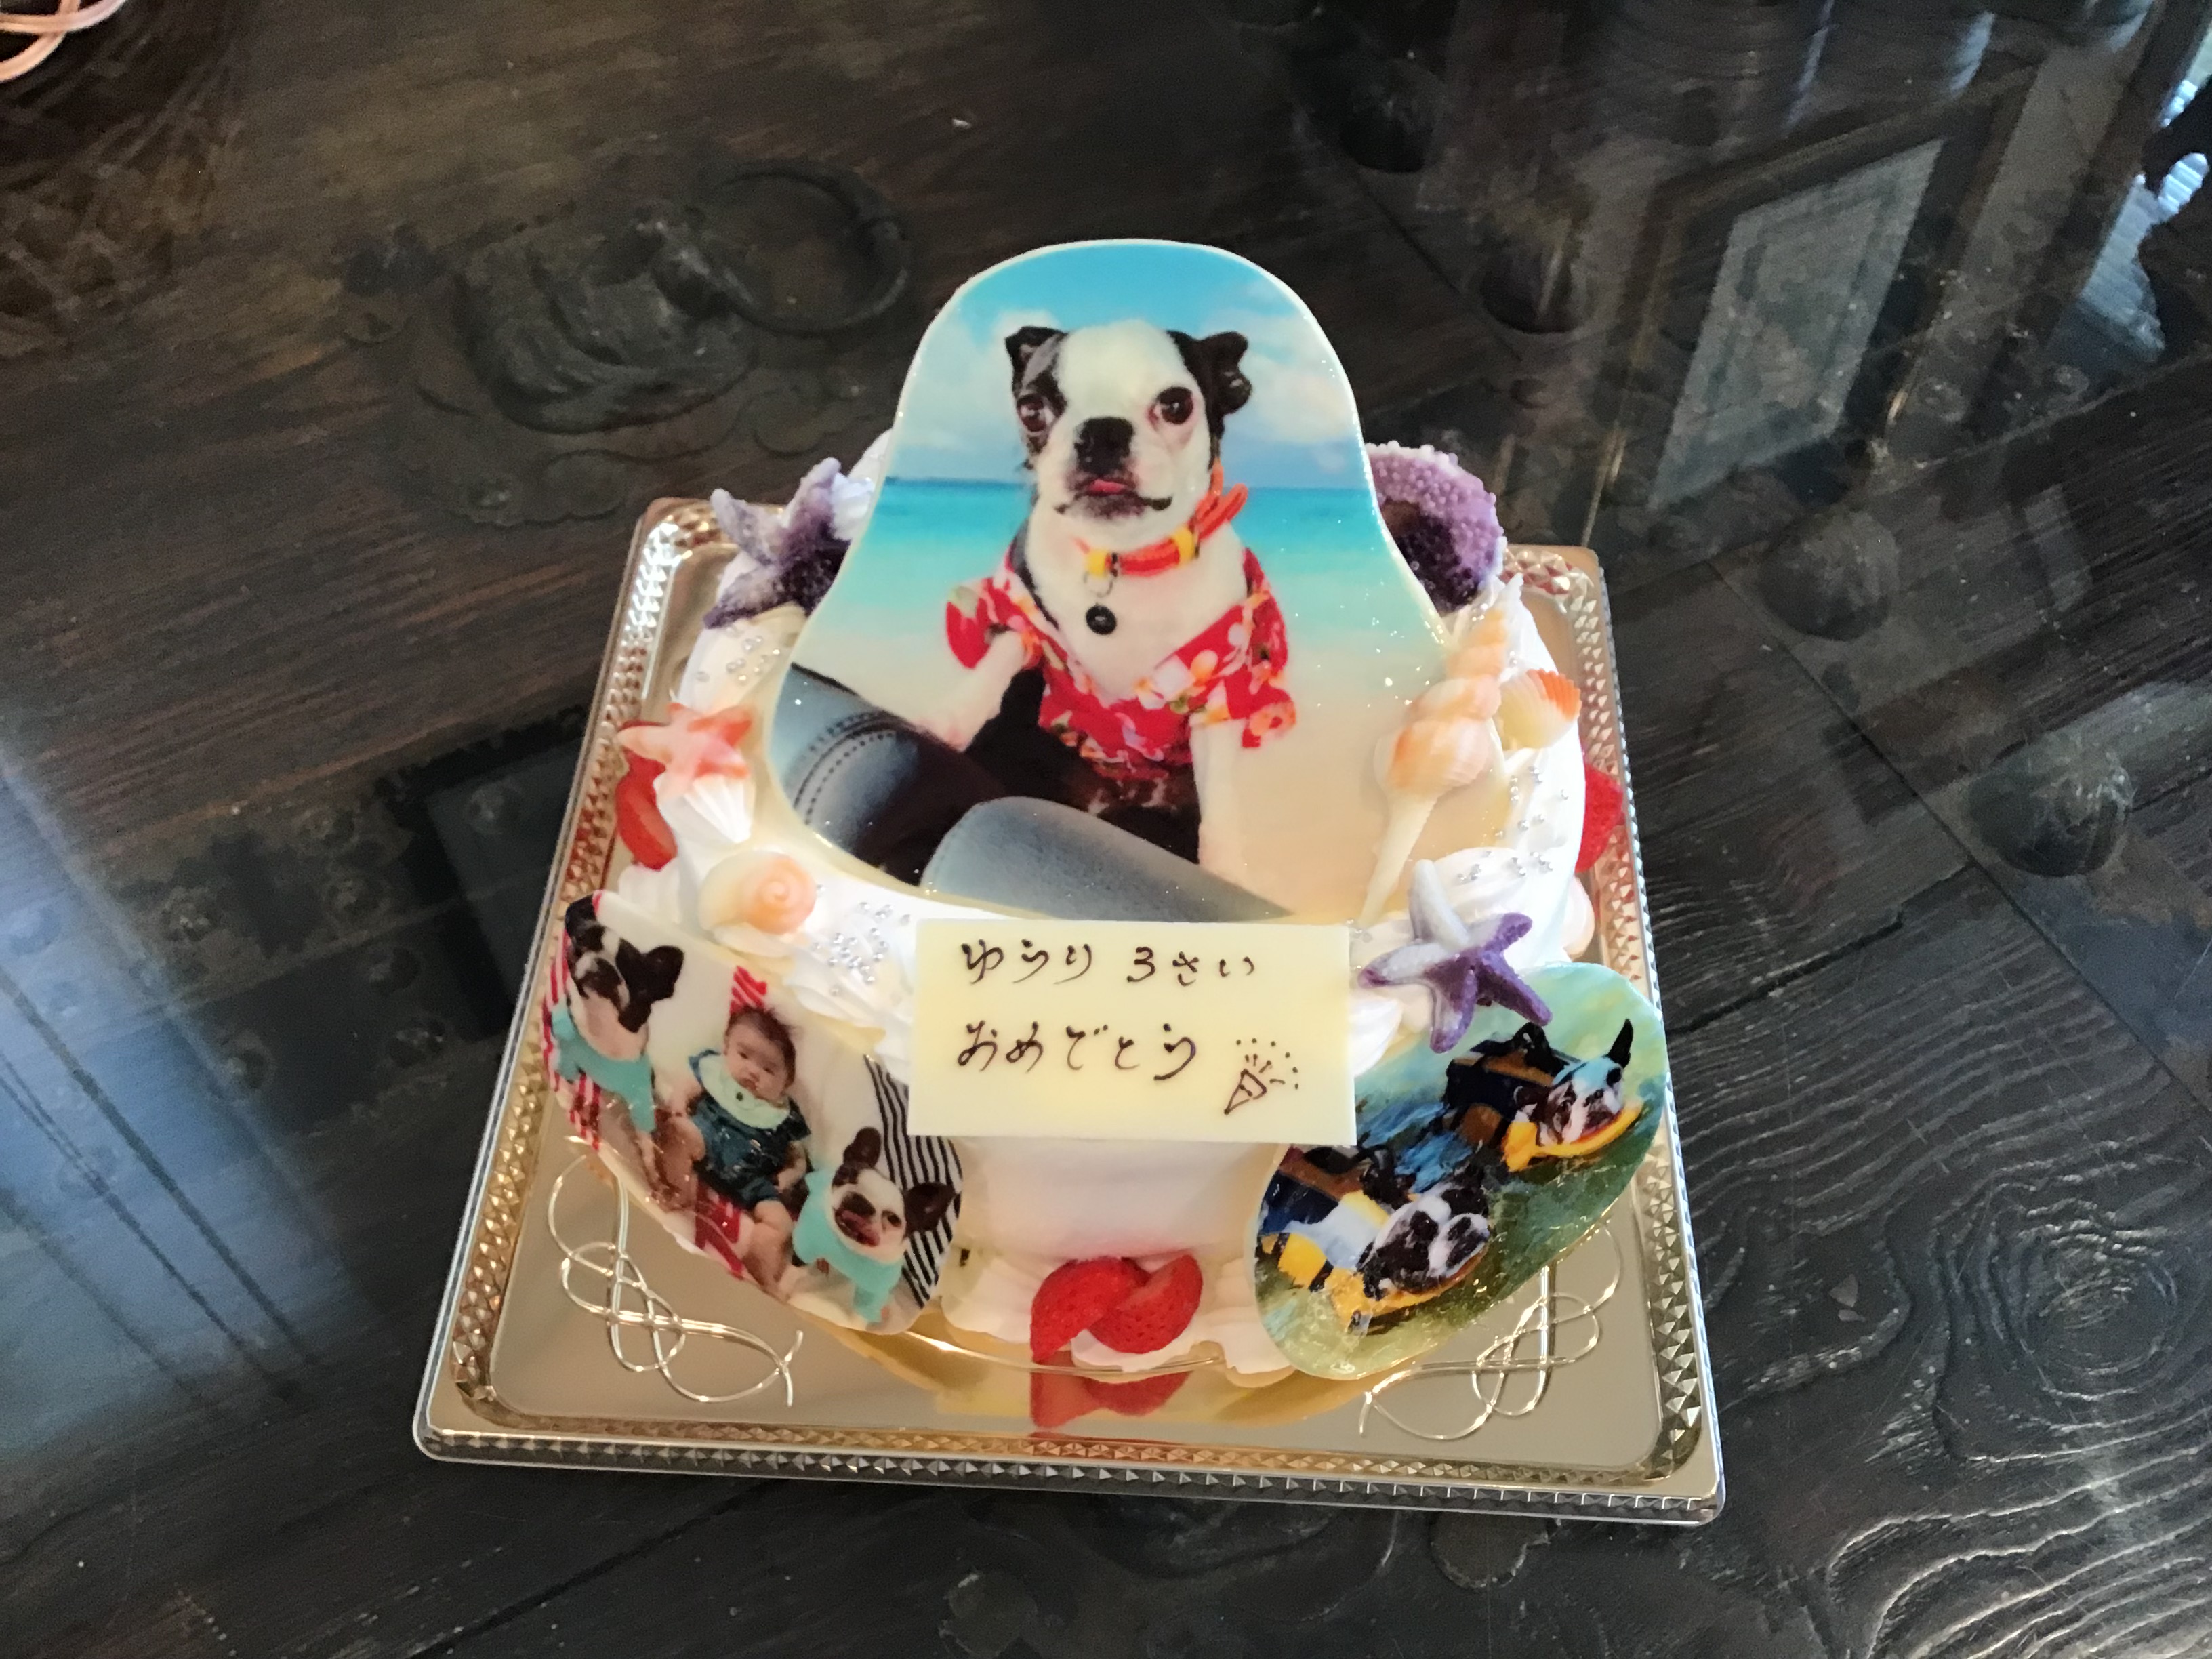 #香川県キャラケーキ #高松市キャラクターケーキ #パティスリーグレースキャラクターケーキ #イラストケーキ #プリントケーキ #犬ケーキ